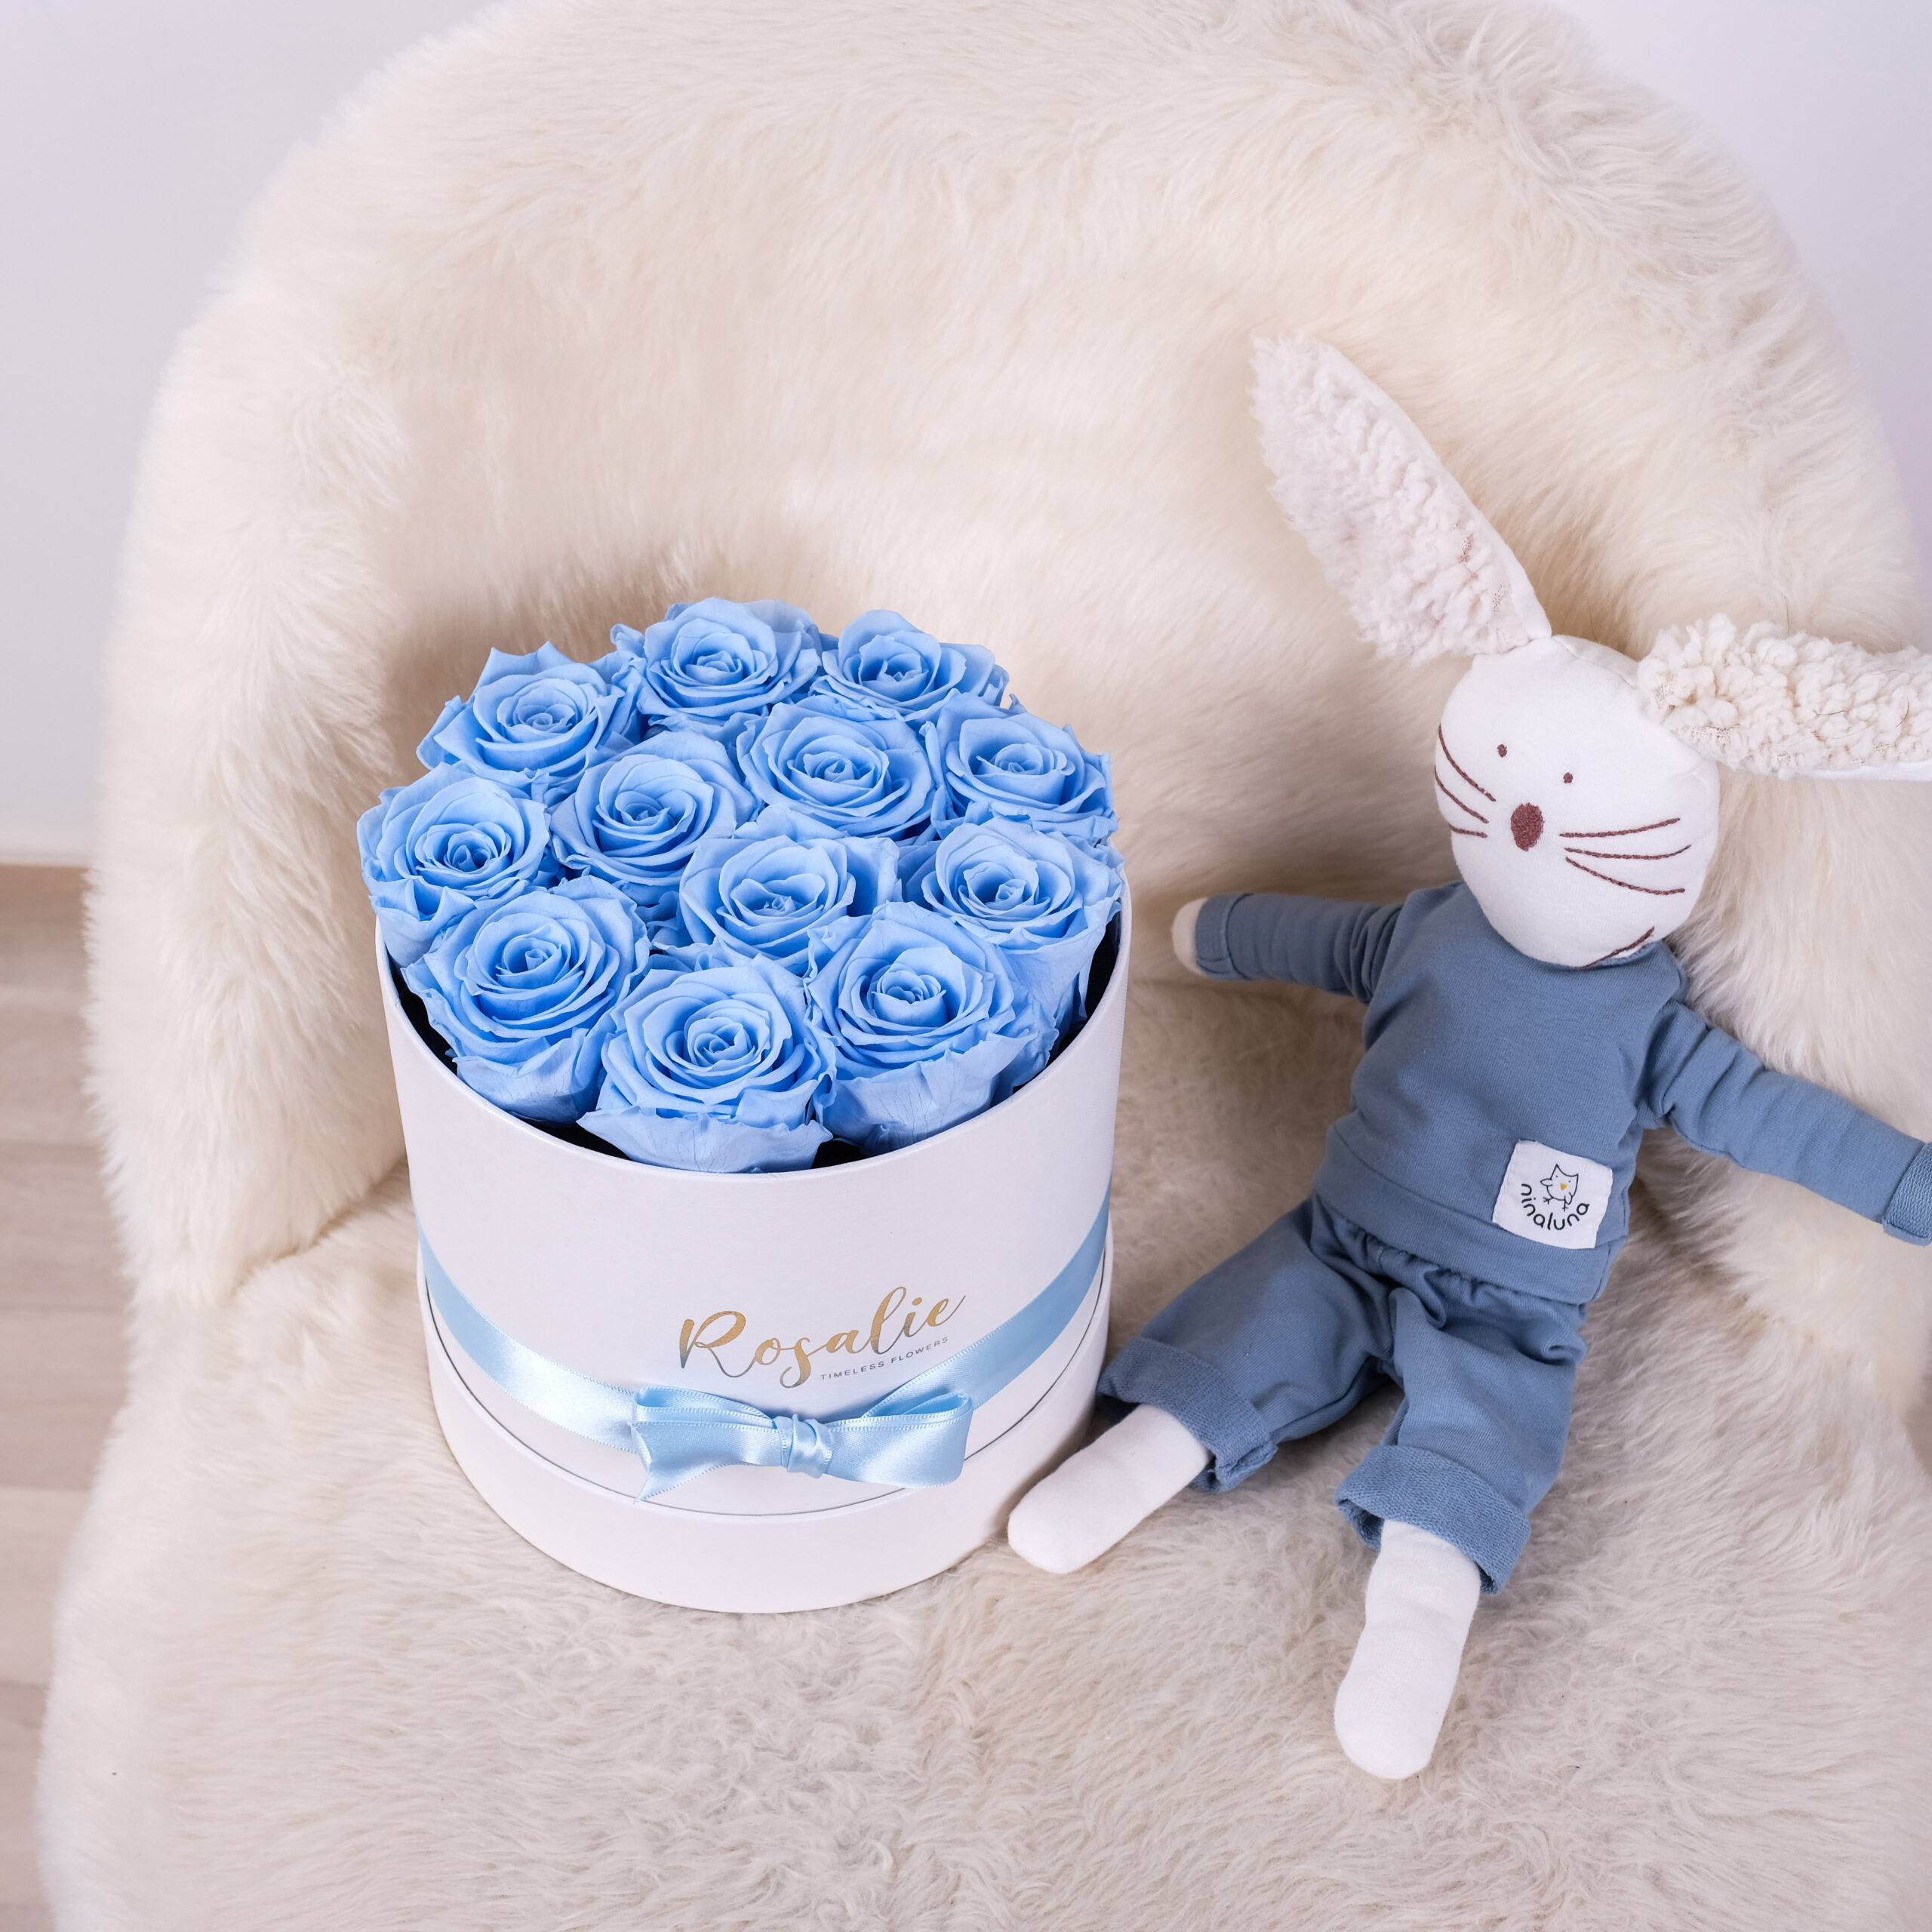 scatola tonda con 12 rose stabilizzate azzurre accanto a peluche a forma di coniglio